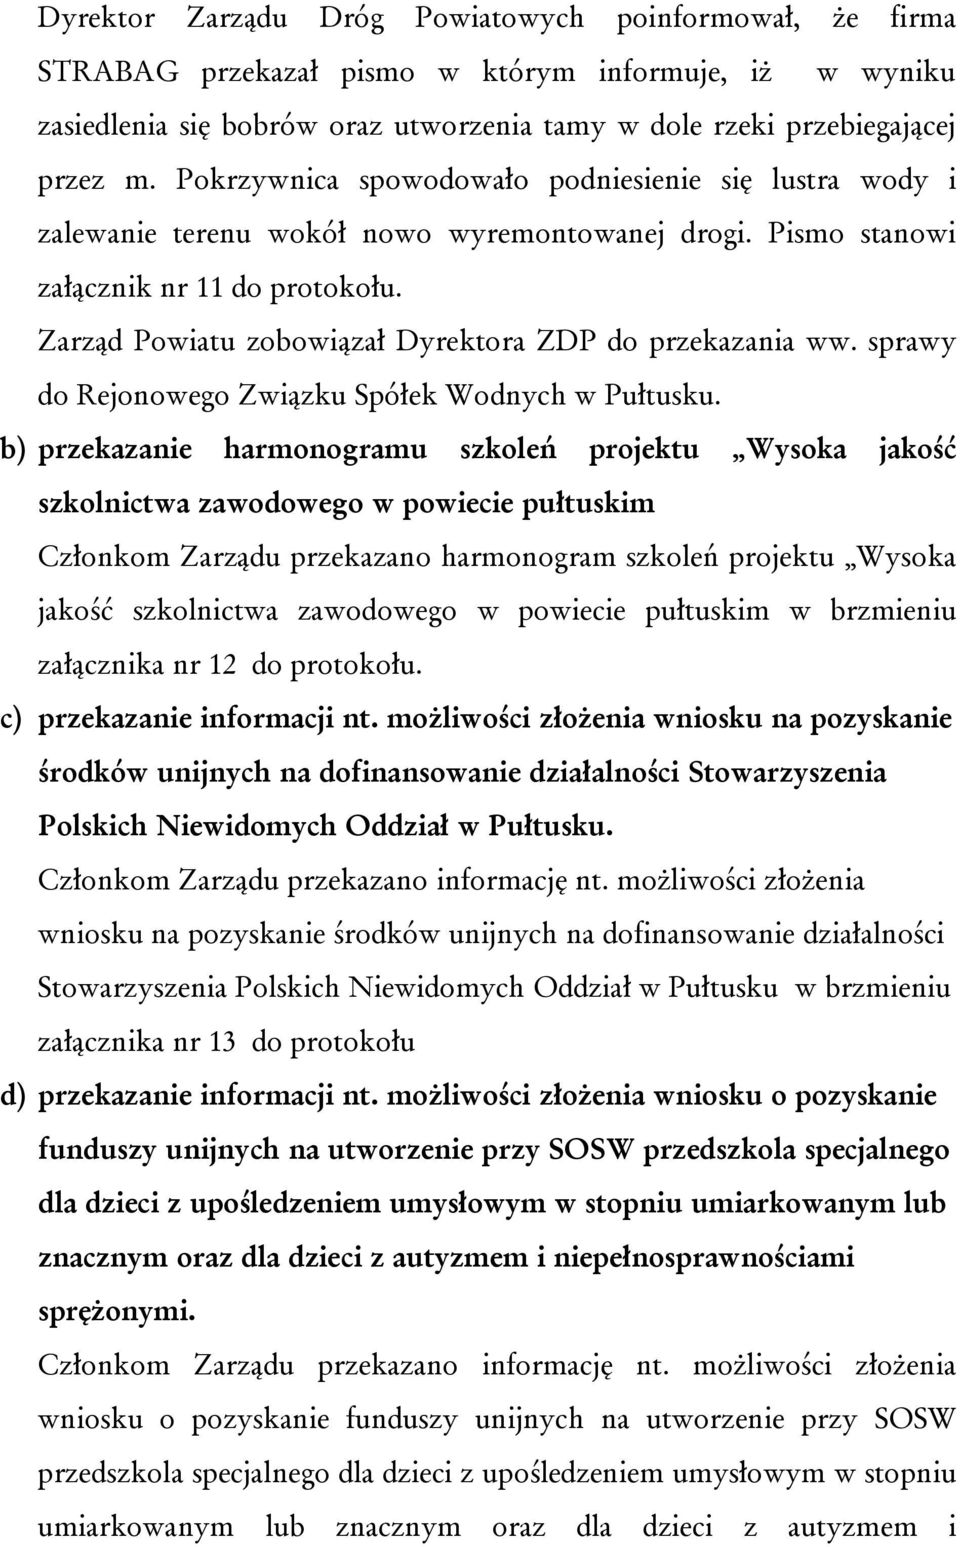 Zarząd Powiatu zobowiązał Dyrektora ZDP do przekazania ww. sprawy do Rejonowego Związku Spółek Wodnych w Pułtusku.